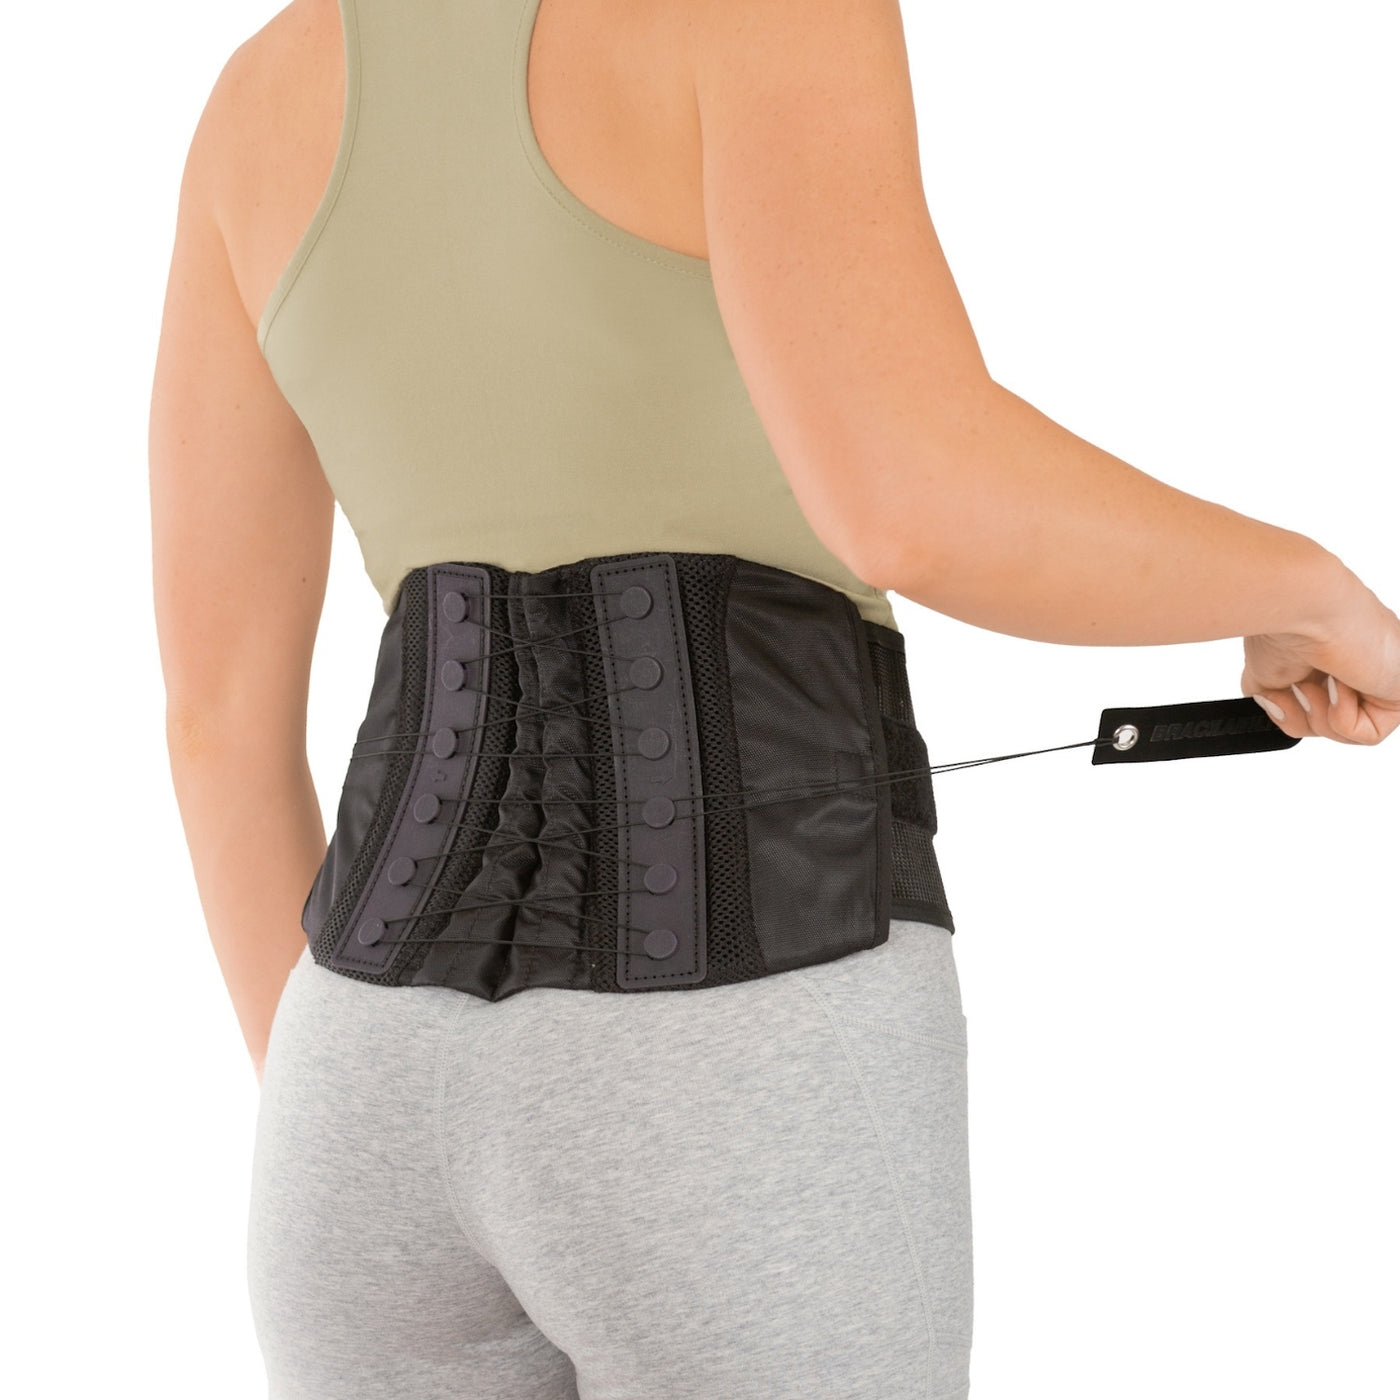 Women's Back Brace for Female Lower Back Pain - Lightweight Soft